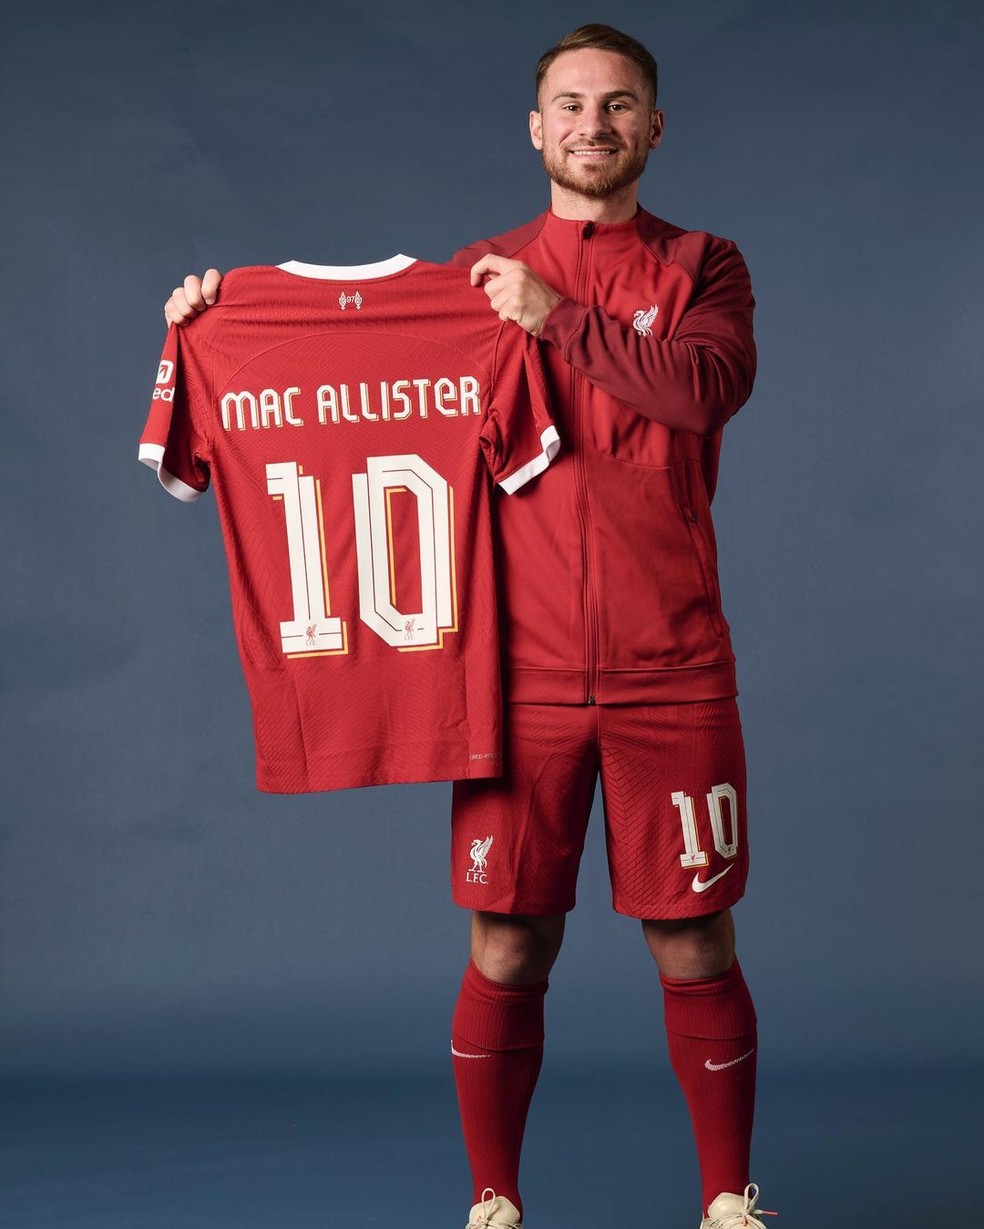 Alexis McAllister é o novo camisa 10 do Liverpool — Foto: Divulgação / Liverpool FC